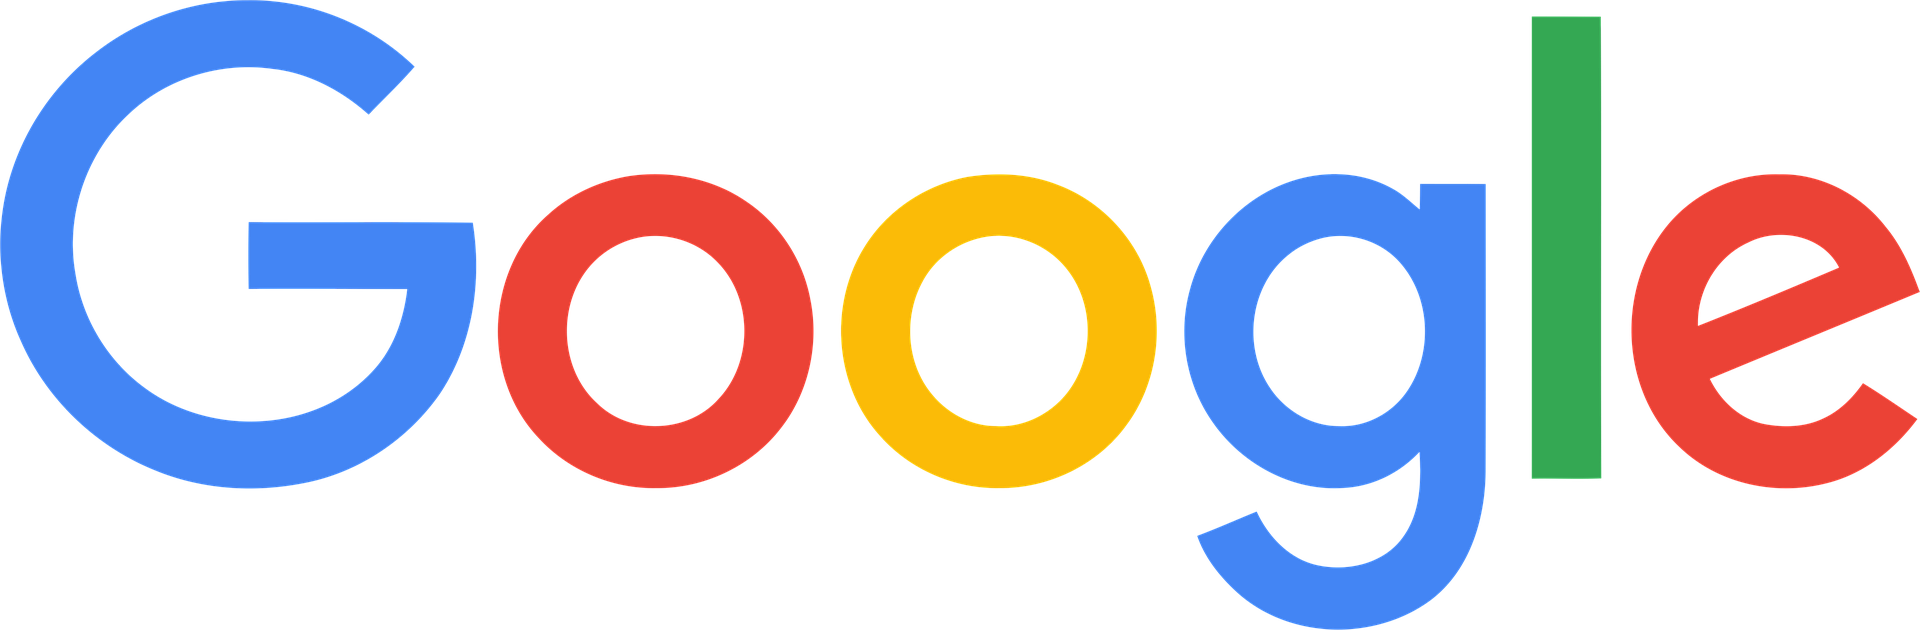 Das Google logo